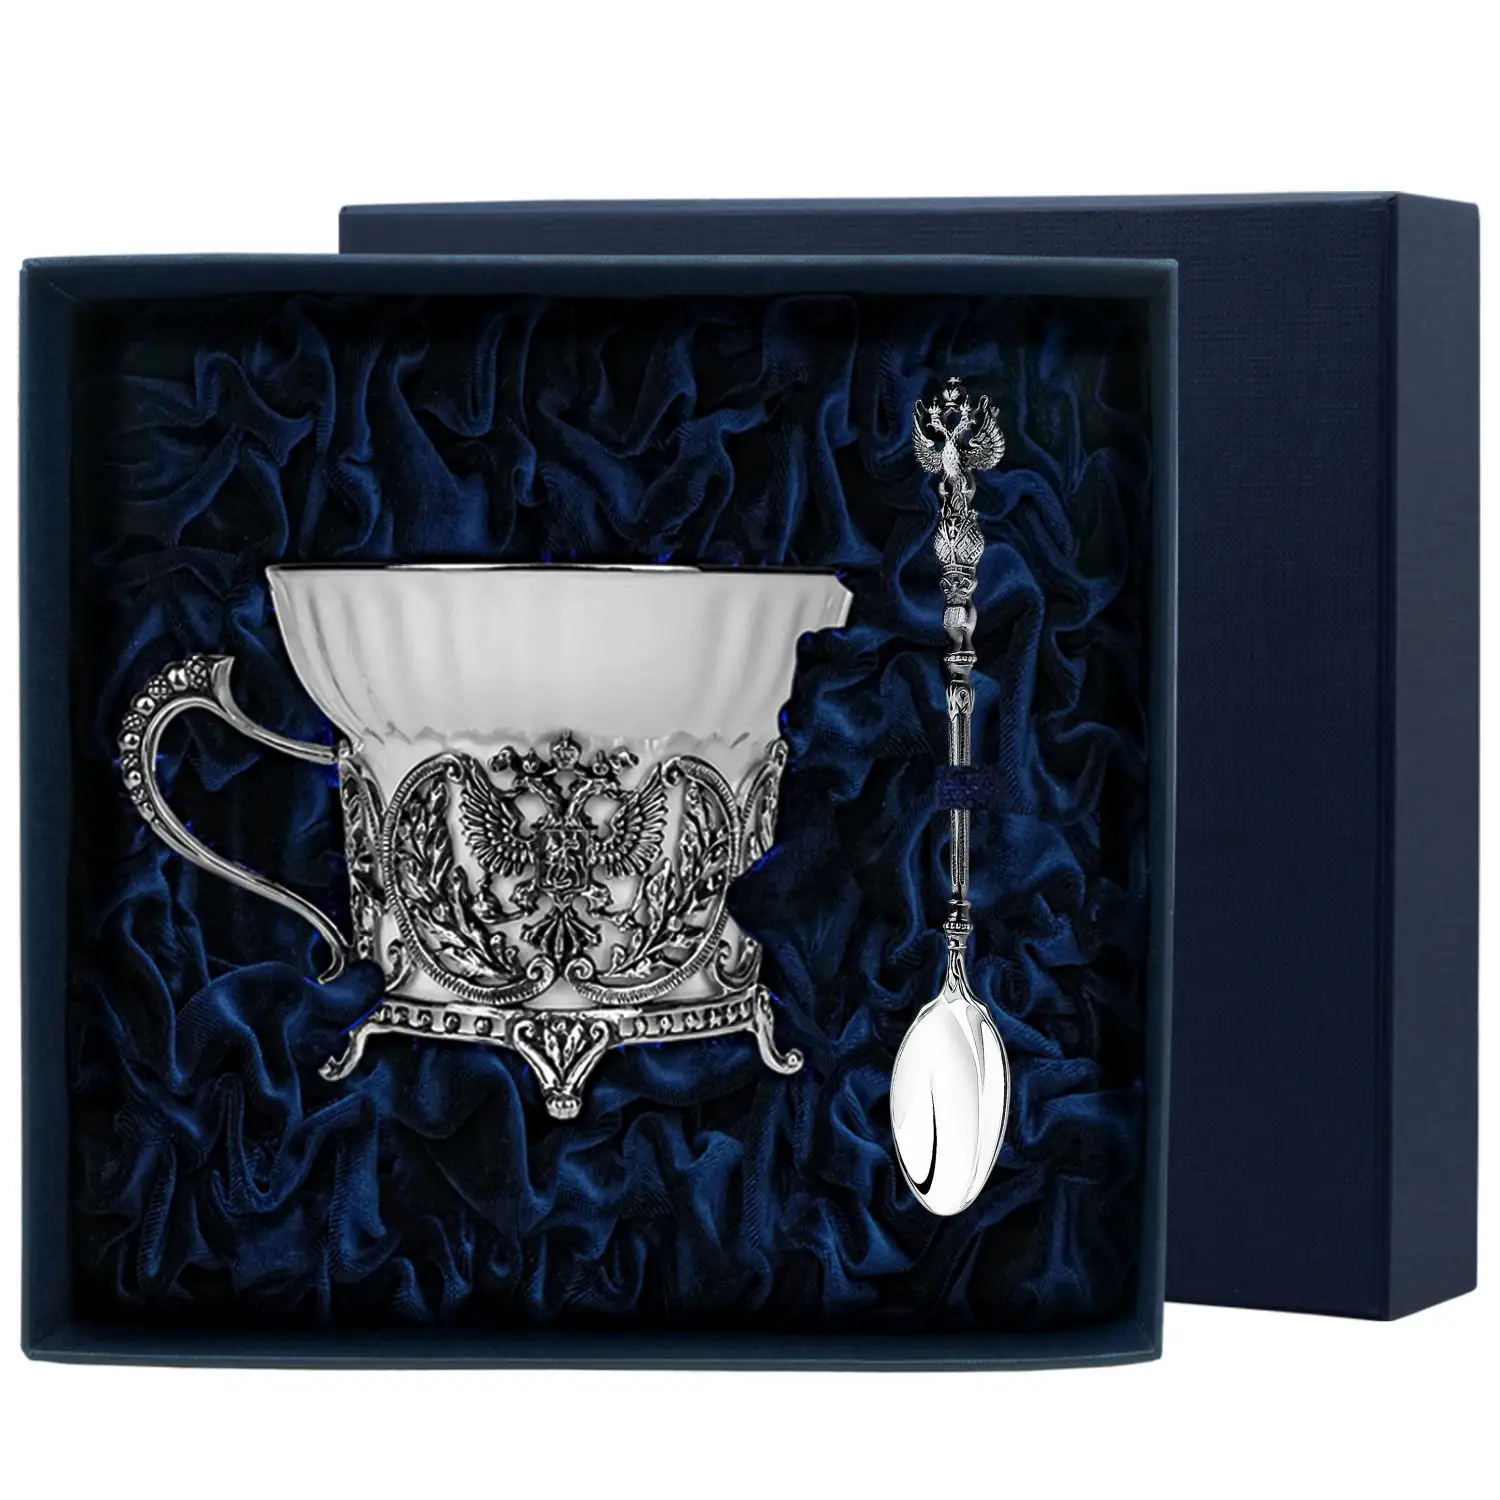 Набор чайная чашка Герб: ложка, чашка (Серебро 925) набор чайная чашка королевская охота ложка чашка серебро 925